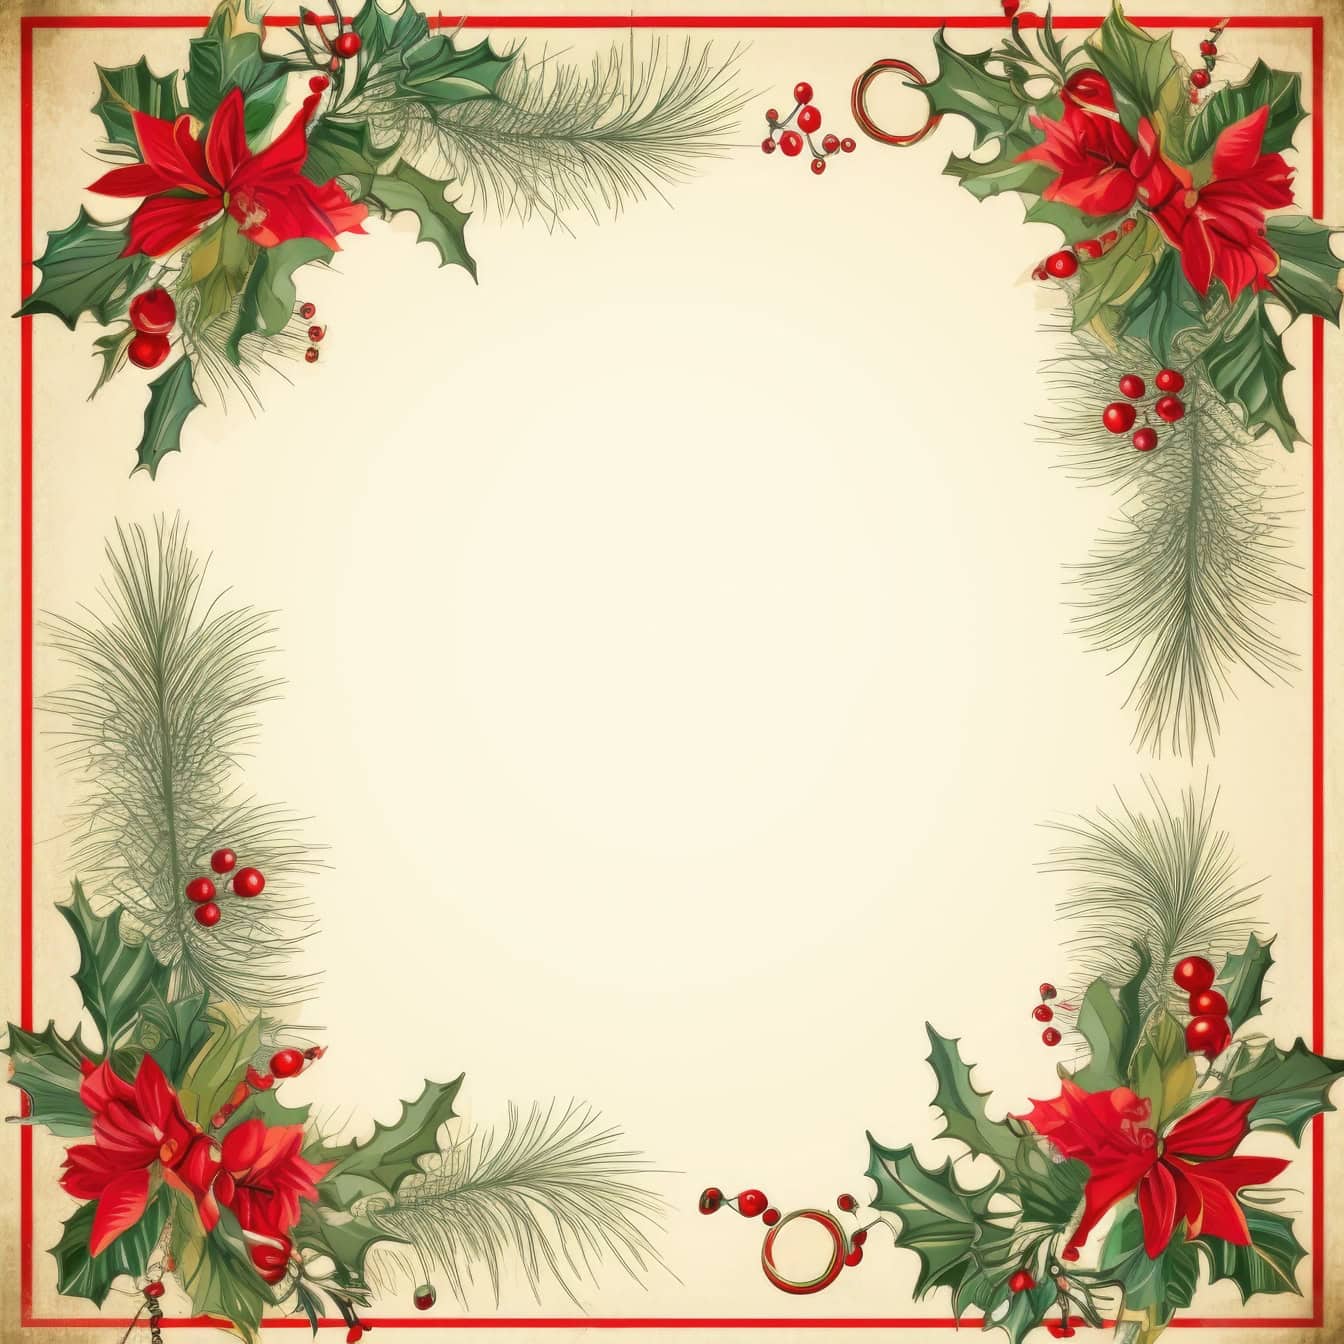 赤い果実と緑の葉の正方形のフレームを備えたレトロなスタイルの装飾的なクリスマスと新年のグリーティングカードテンプレート